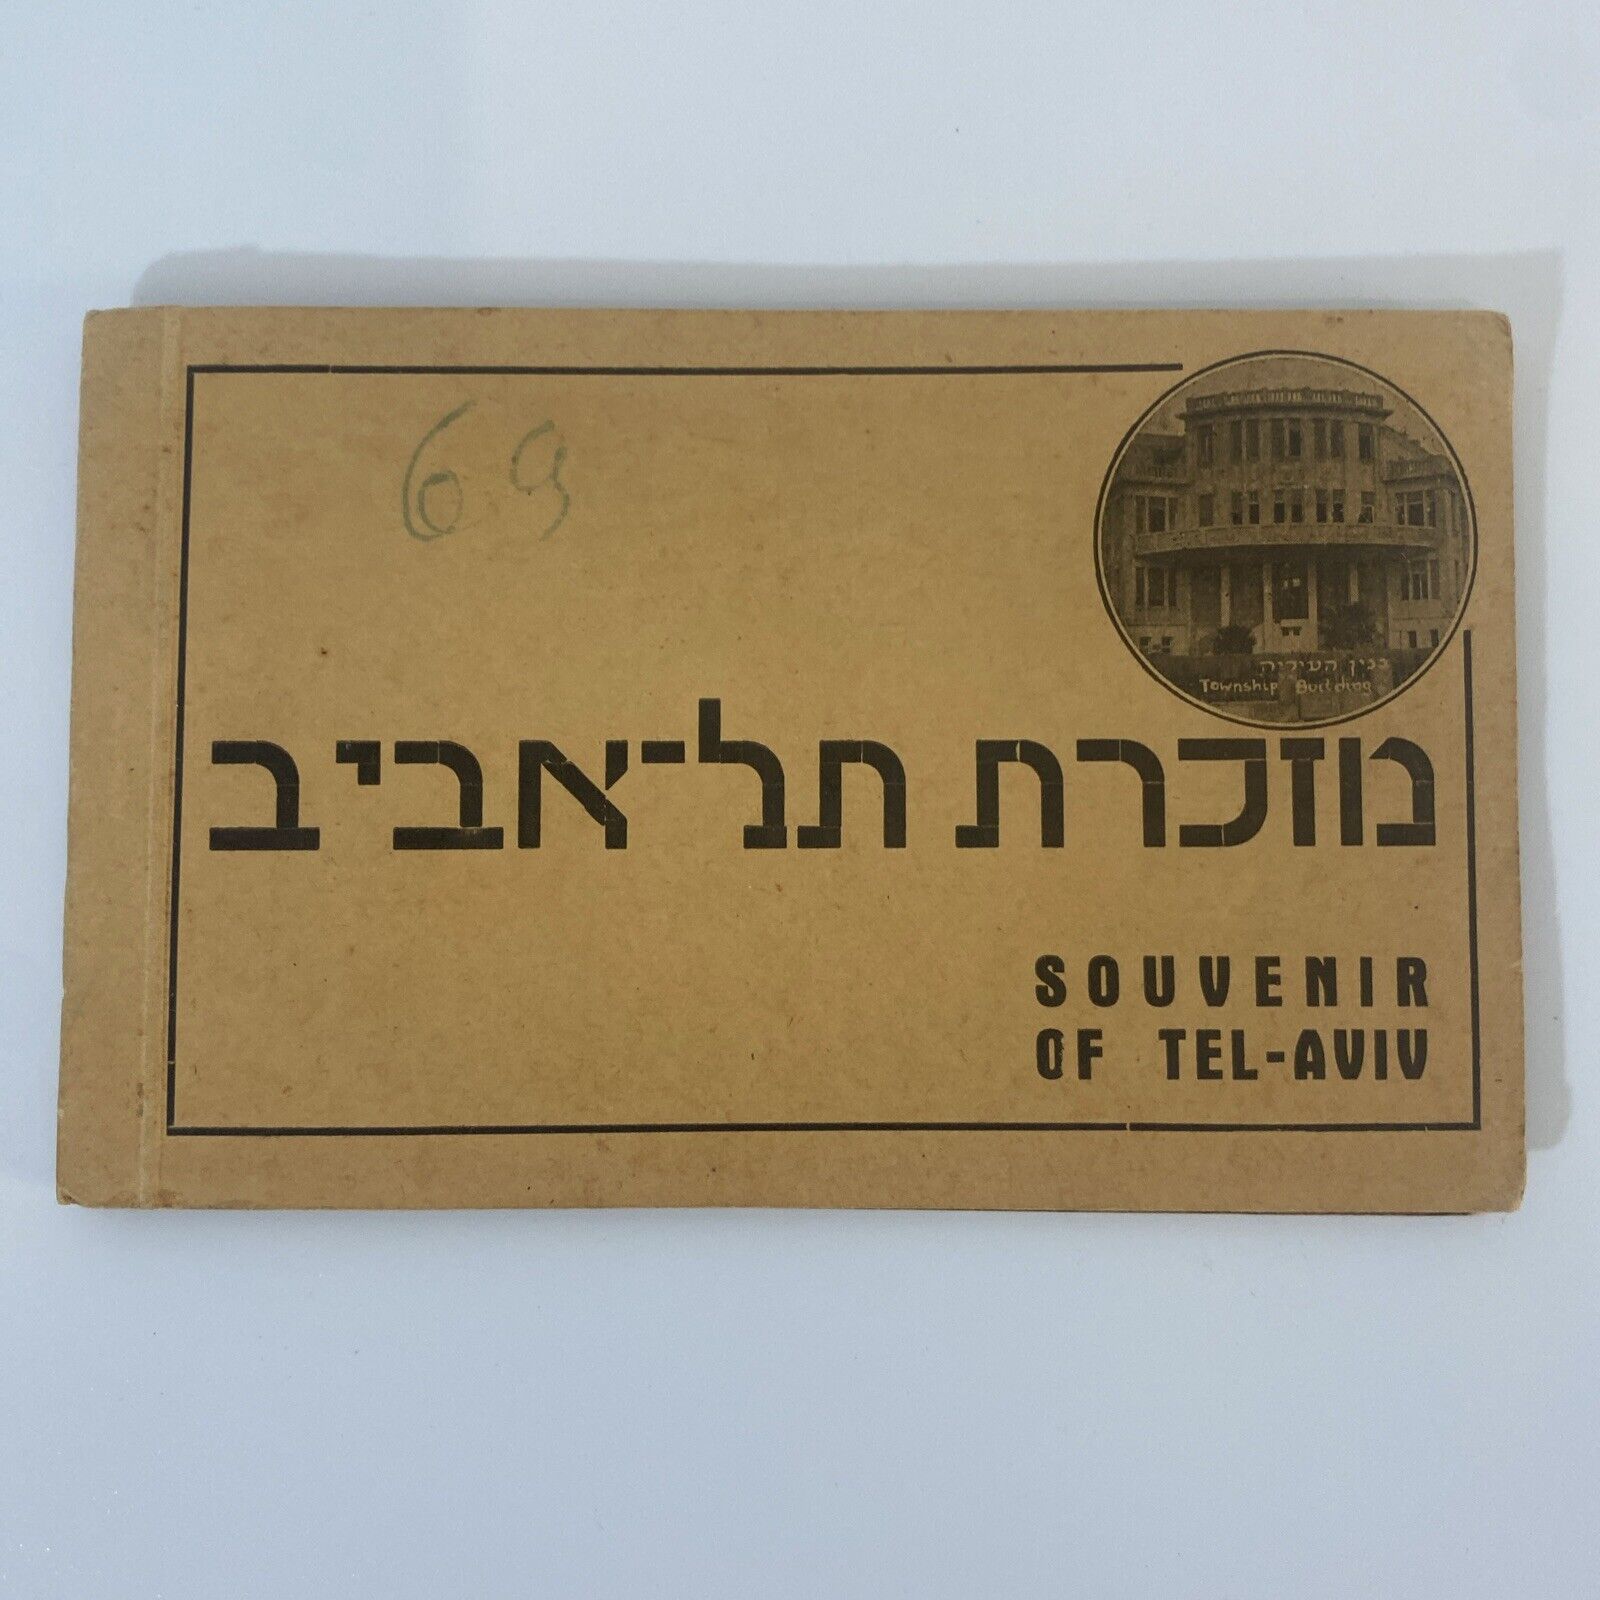 VERY RARE c.1930-41 Postcards from Tel Aviv BARLEVY TEL AVIV